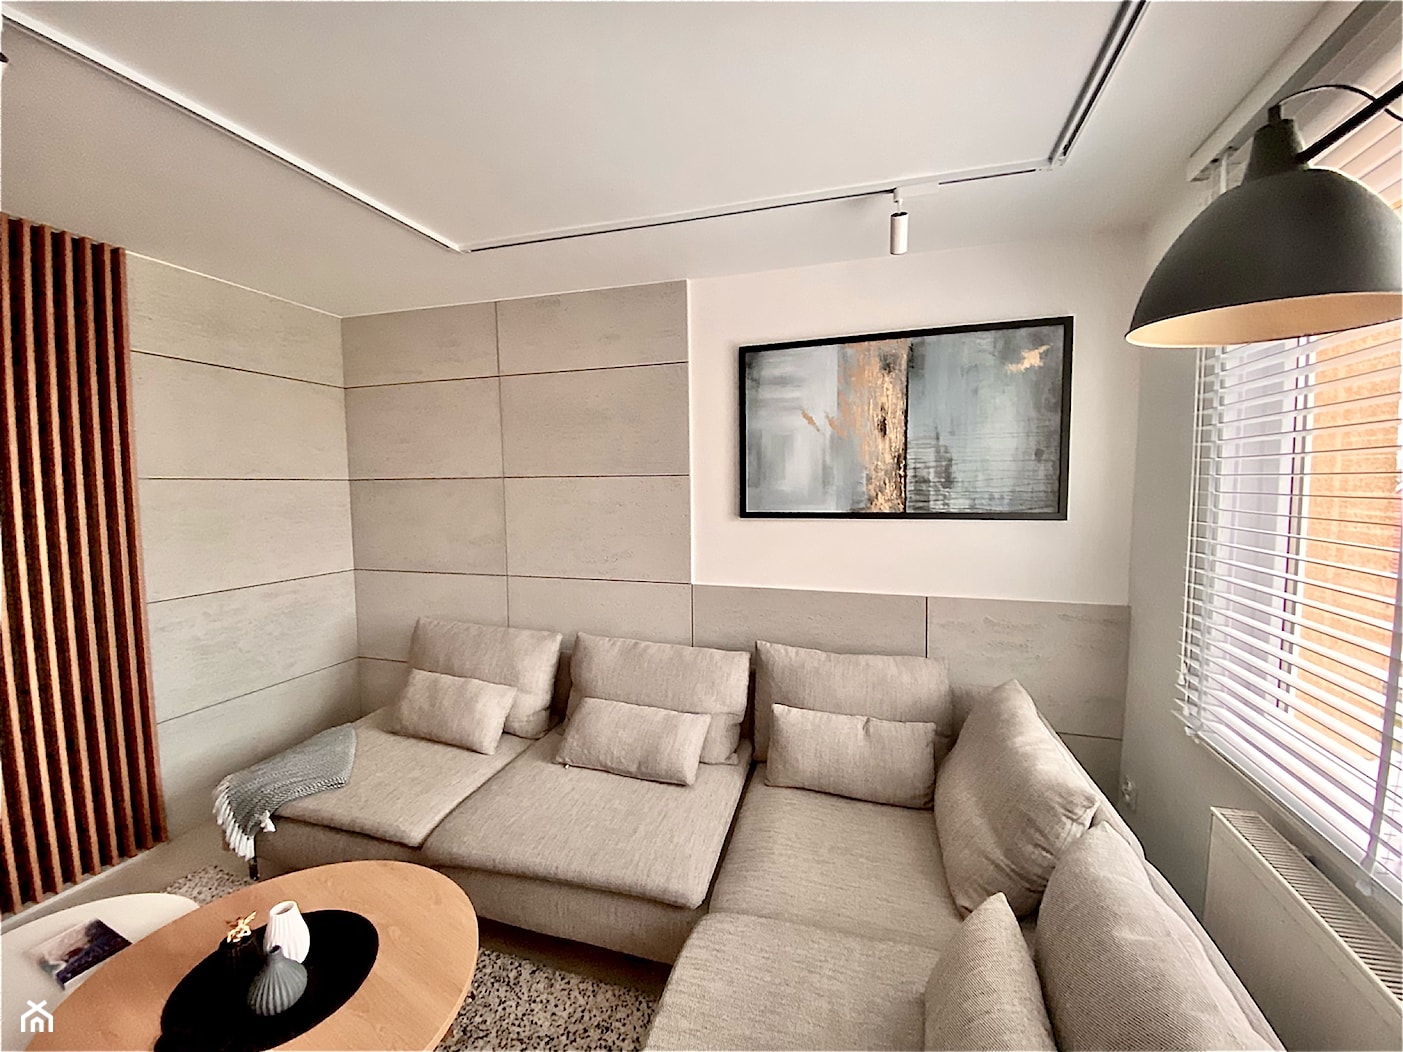 Beton architektoniczny w salonie - zdjęcie od Luxum - Homebook